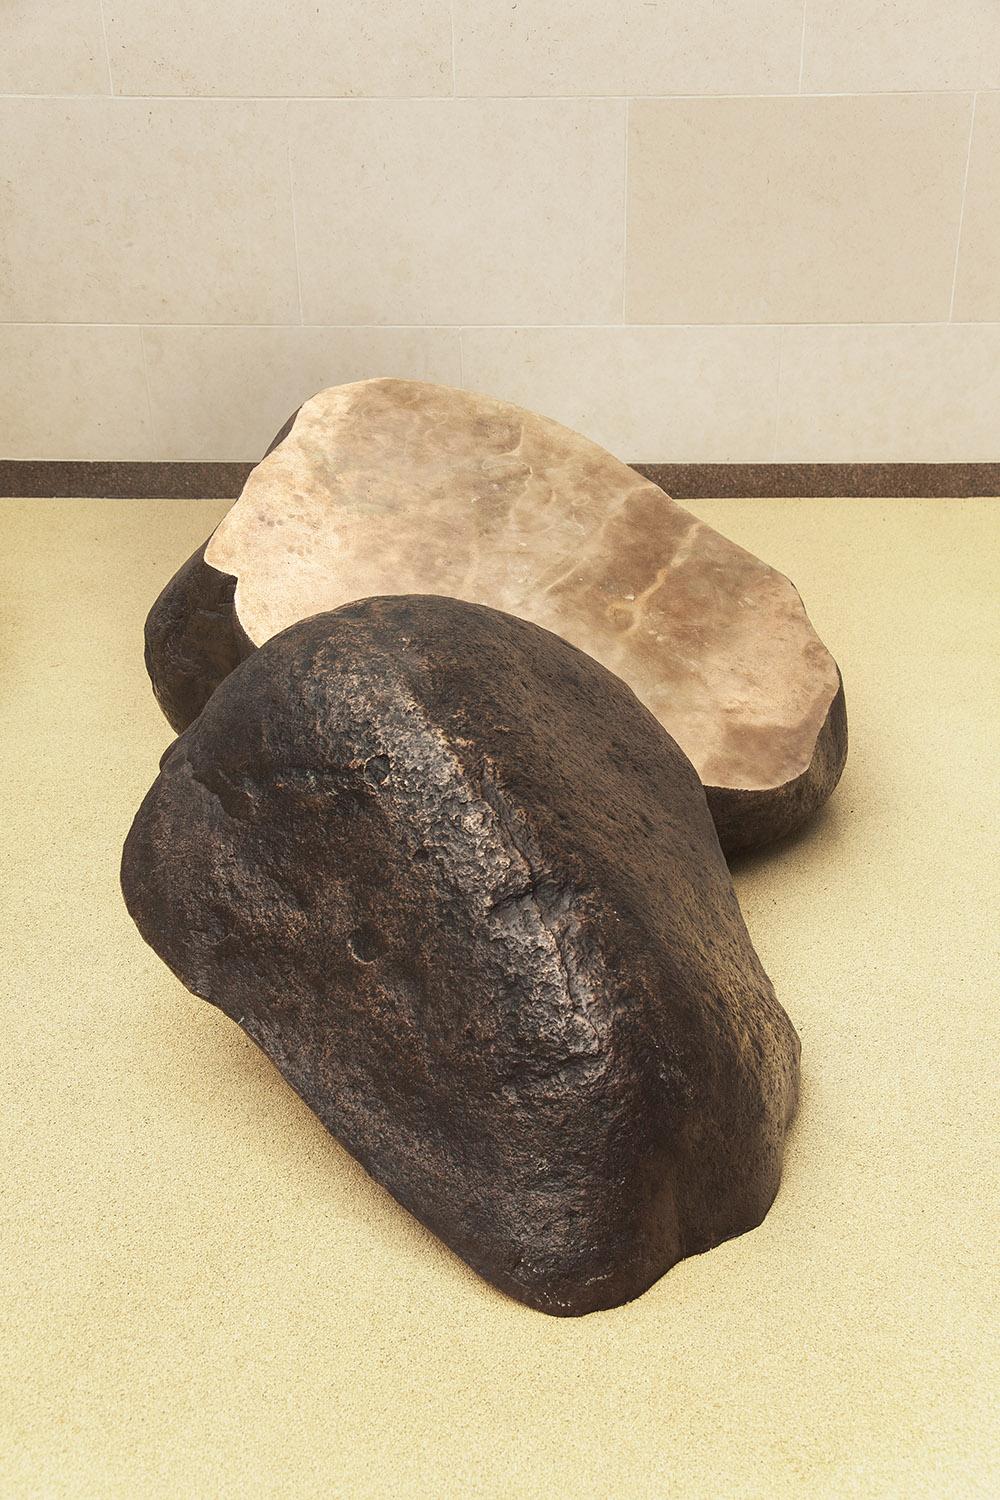 Boulder #2 - The Slide est une sculpture en bronze de l'artiste contemporain Tom Price, dont les dimensions sont 85 × 200 × 130 cm (33,5 × 78,7 × 51,2 in). 
Cette œuvre est disponible sur commande. Il sera créé sur la même base que celle présentée